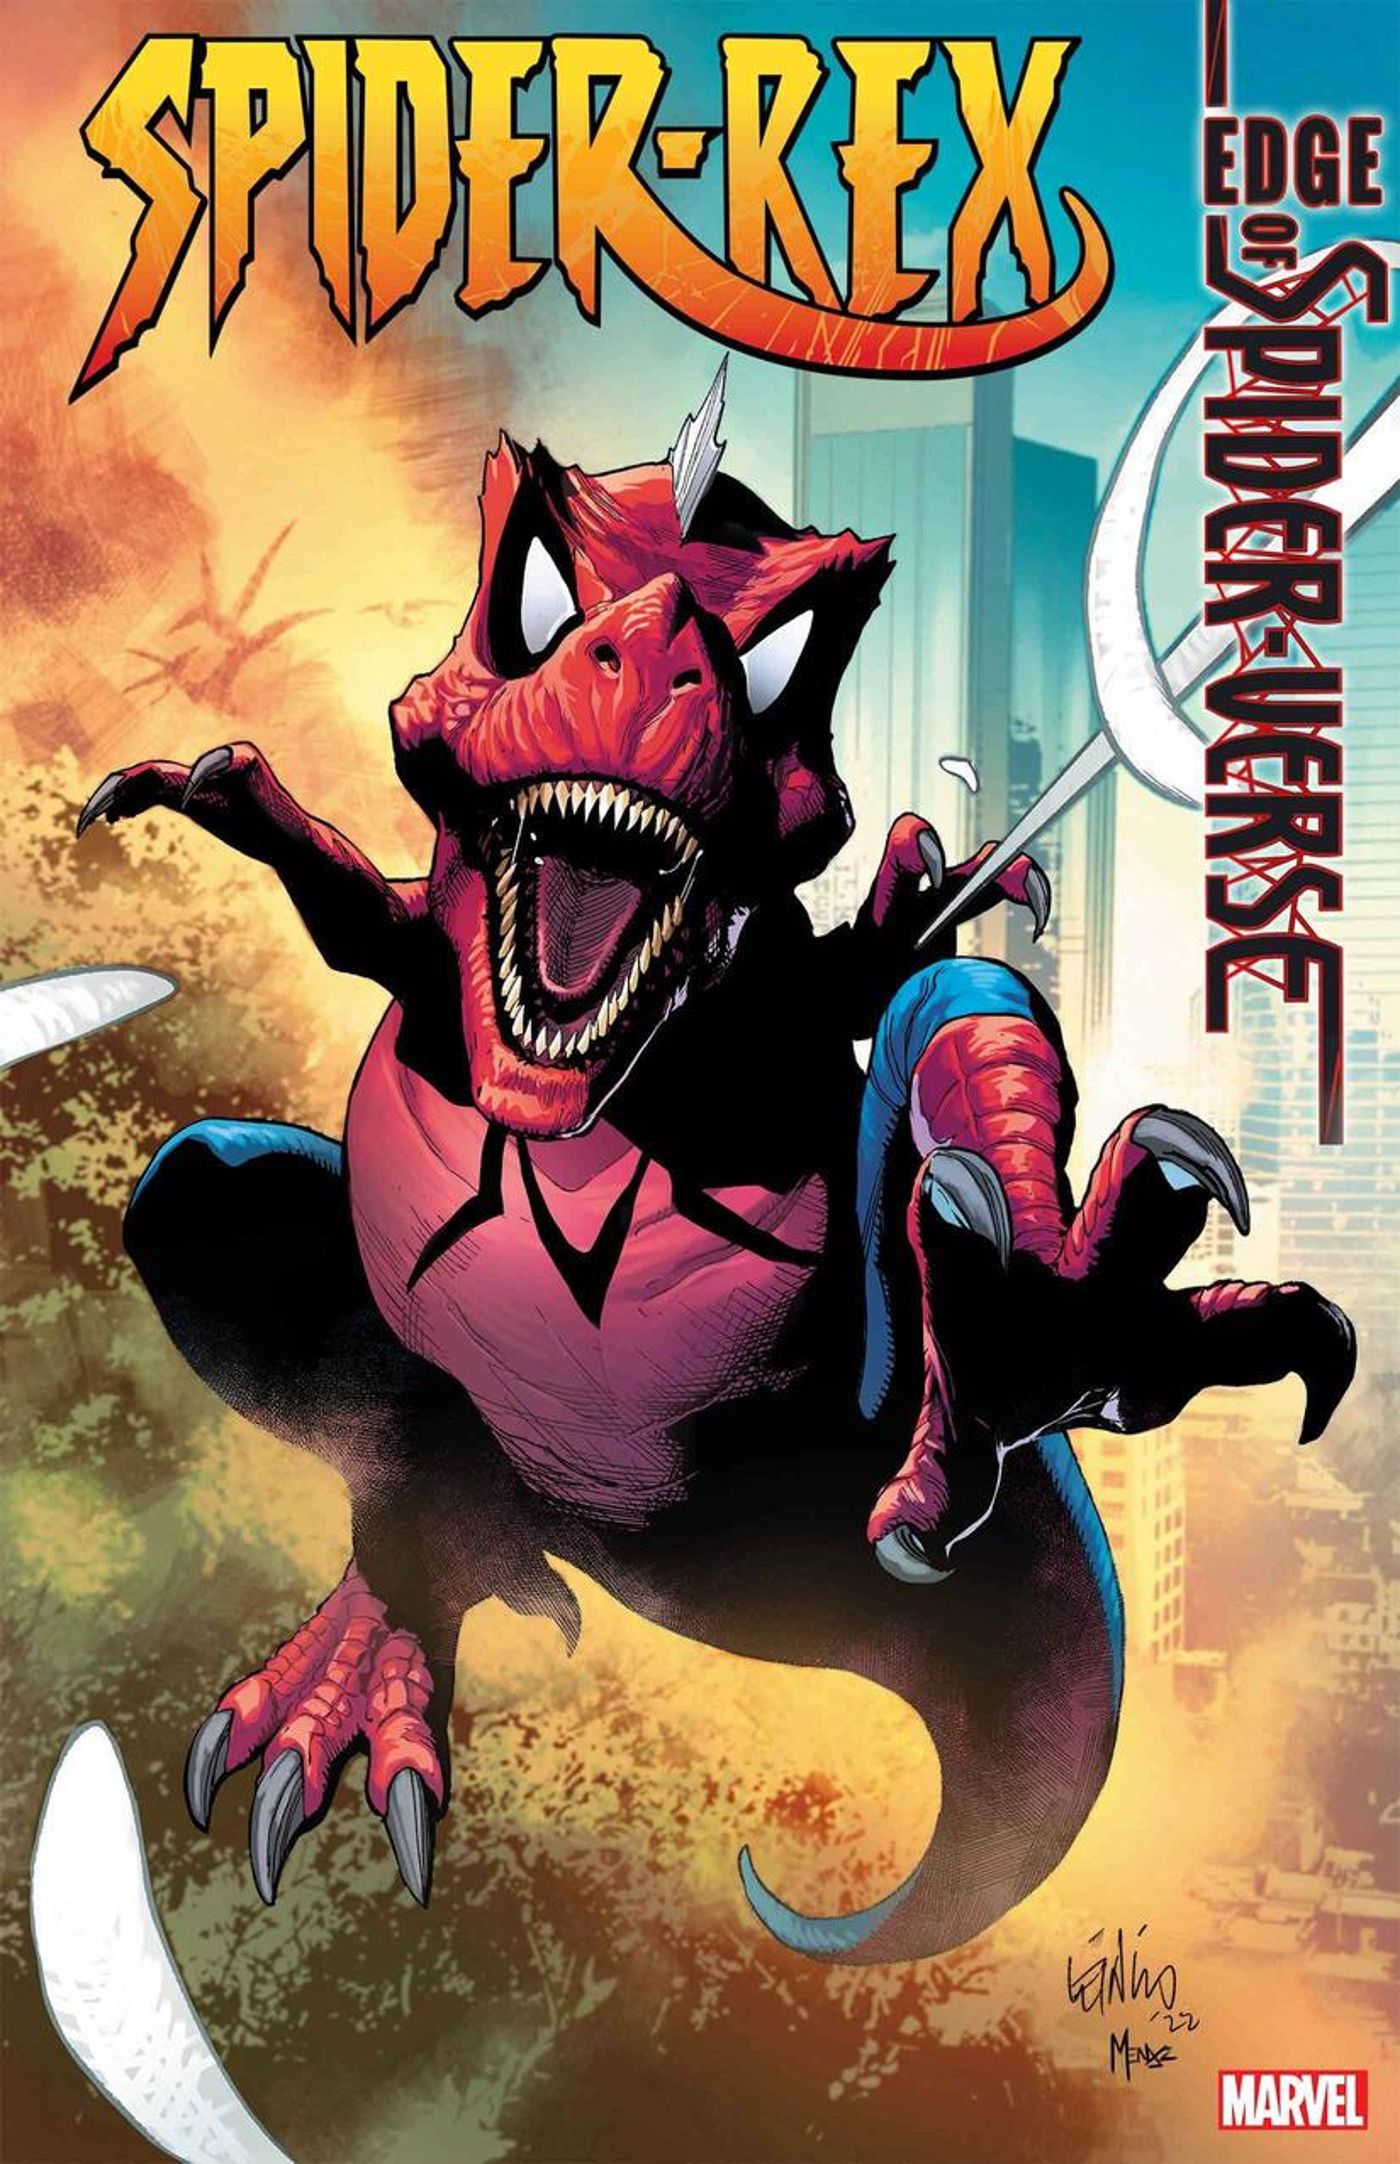 Edge of Spider-Verse's Spider-Rex